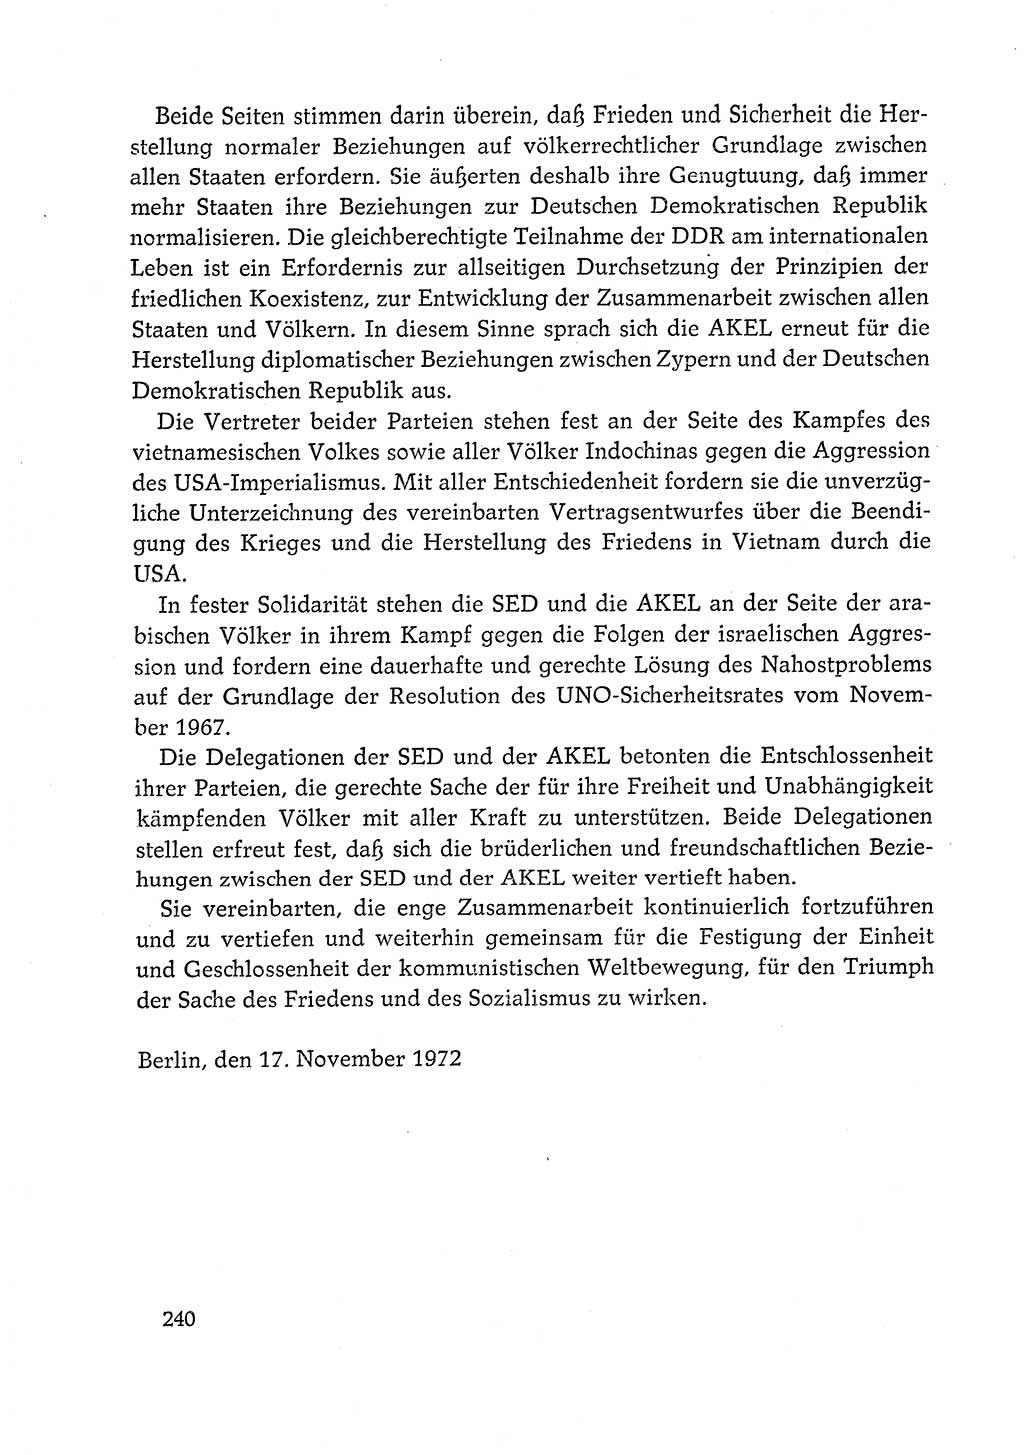 Dokumente der Sozialistischen Einheitspartei Deutschlands (SED) [Deutsche Demokratische Republik (DDR)] 1972-1973, Seite 240 (Dok. SED DDR 1972-1973, S. 240)